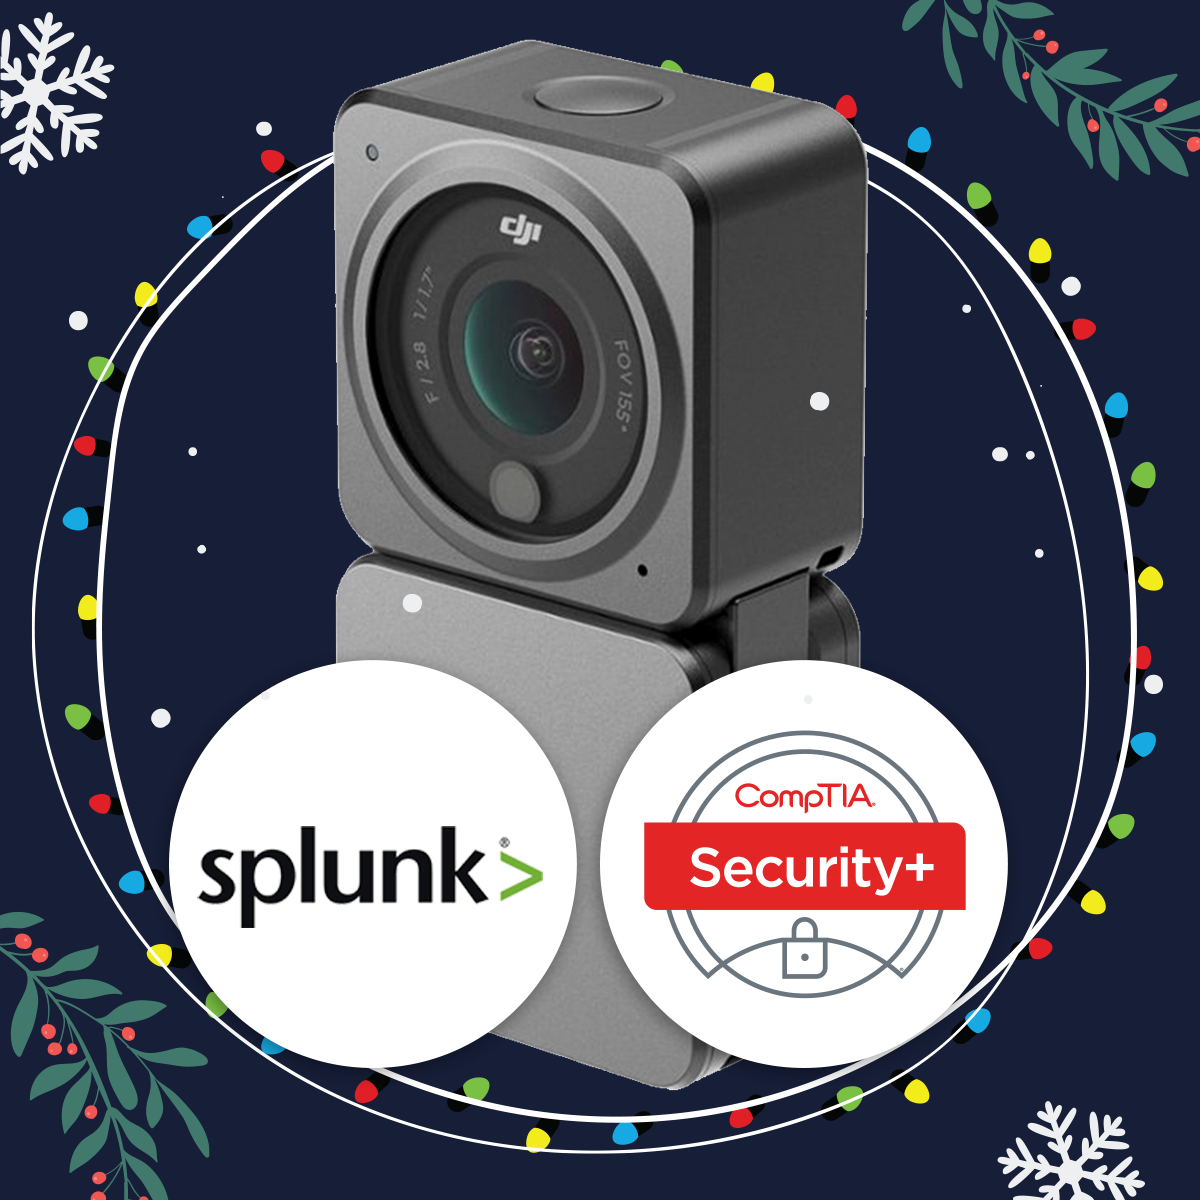 Splunk Security DJI camera